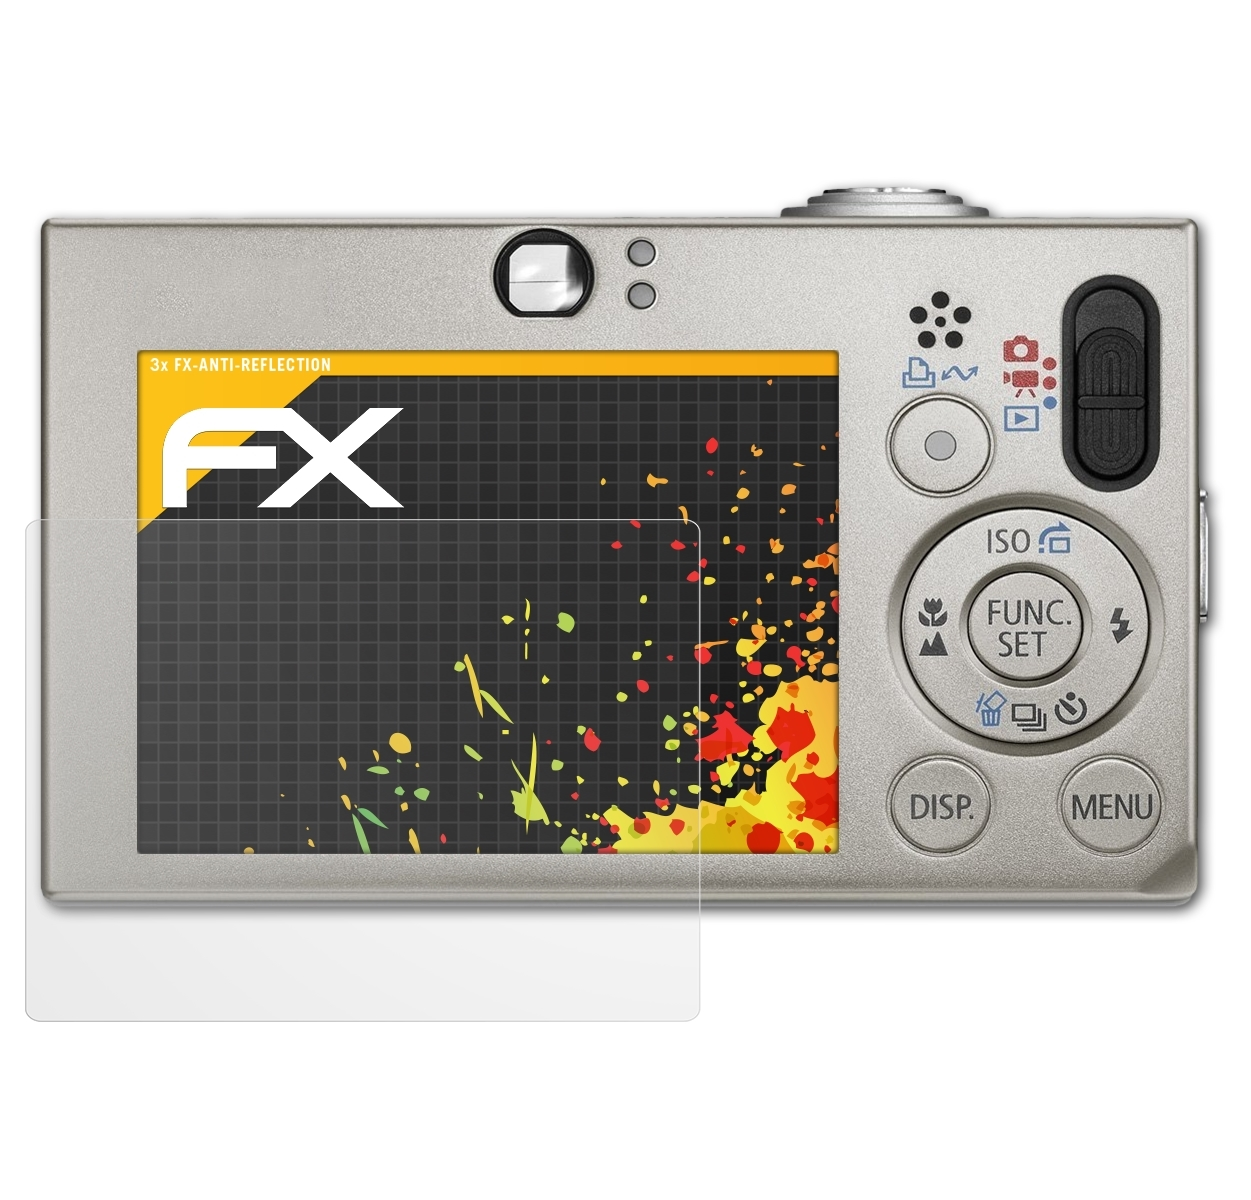 70) Canon ATFOLIX IXUS 3x Displayschutz(für FX-Antireflex Digital